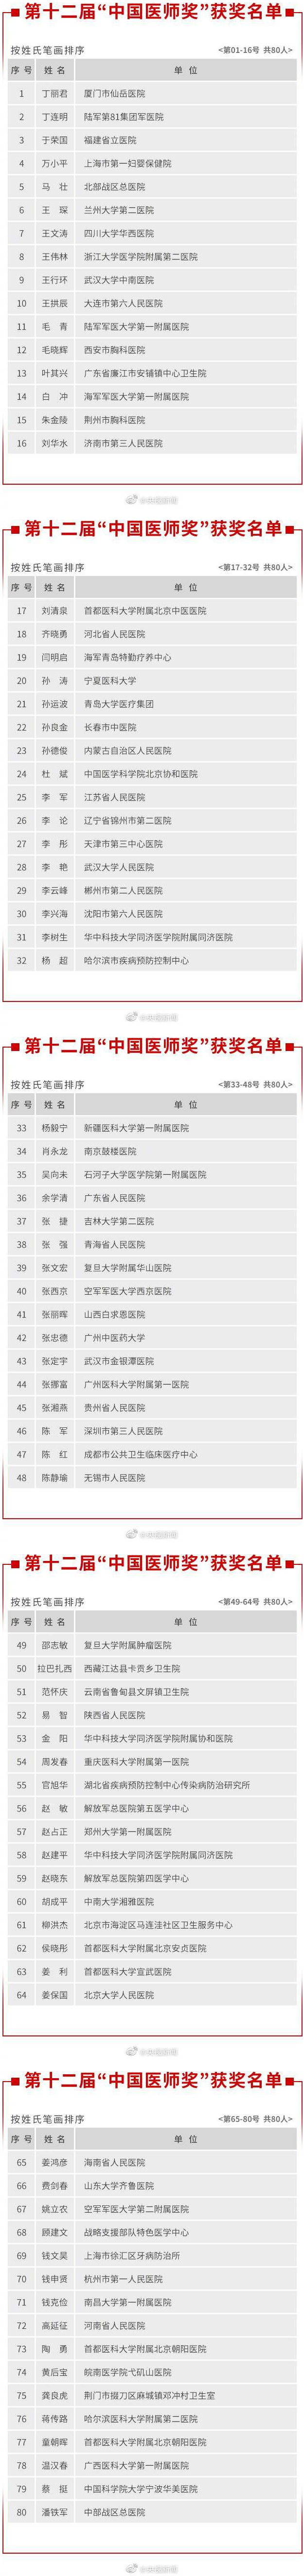 致敬最可爱的人!张文宏等80名医生获中国医师奖 详情名单来了!